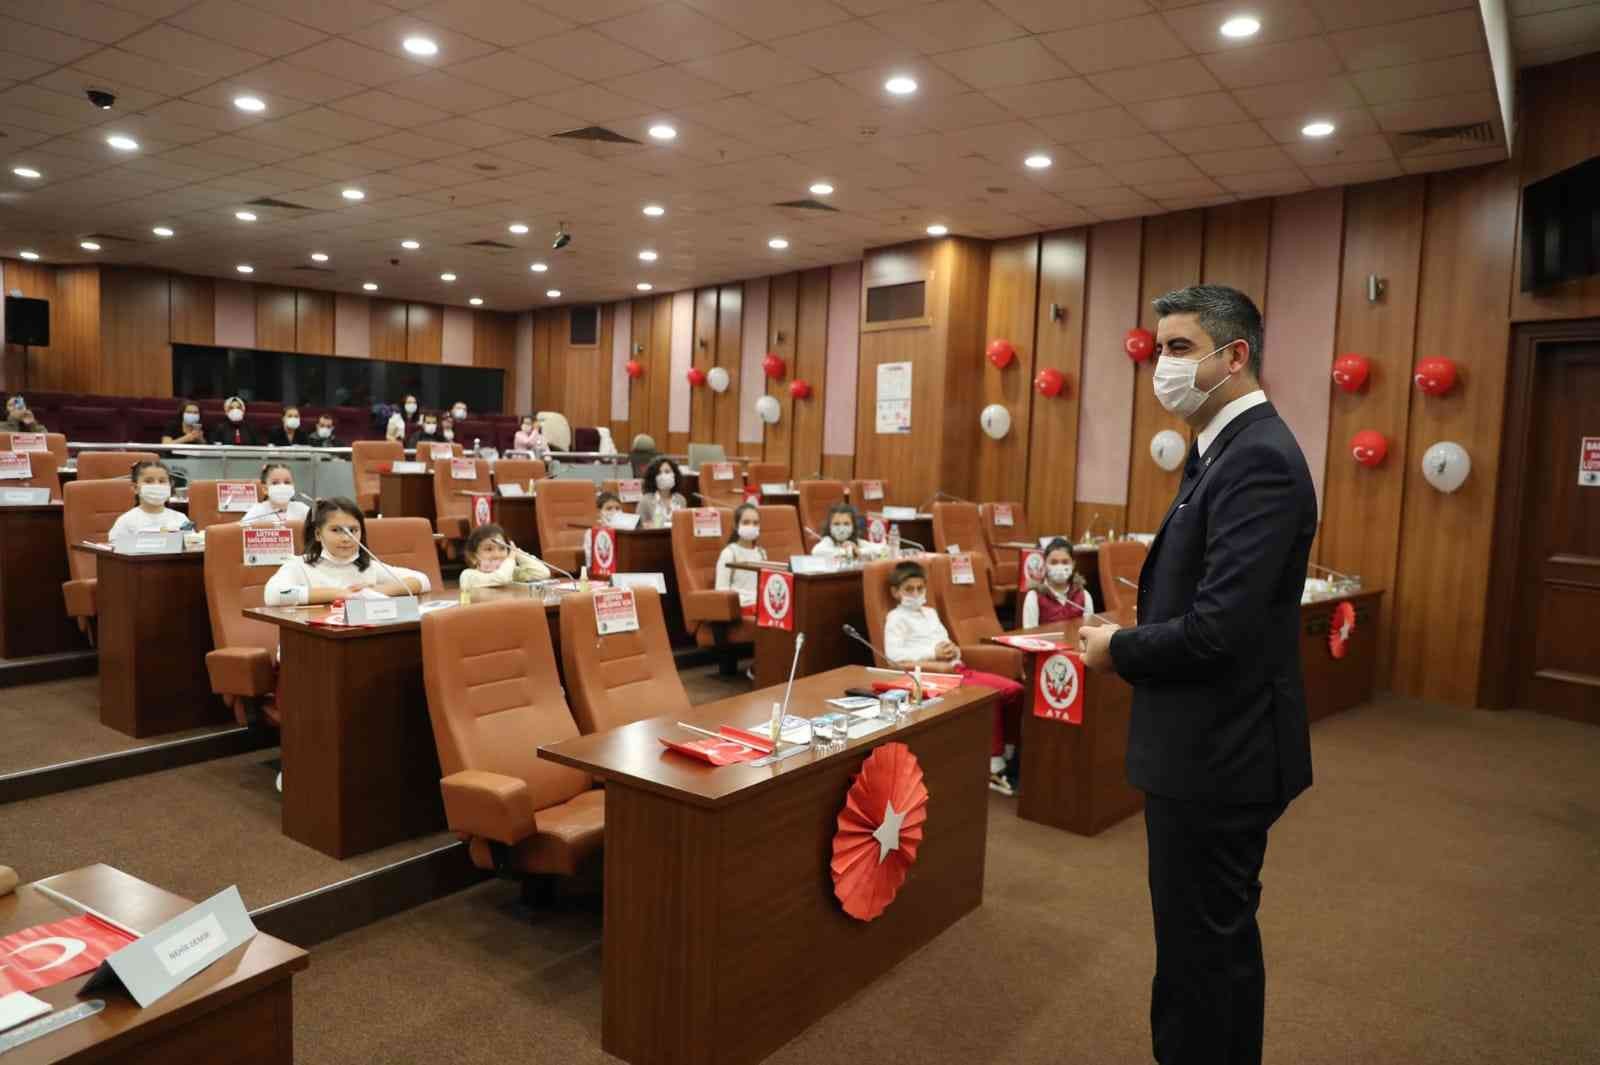 Kartal Belediyesi Çocuk Meclisi 29 Ekim’de özel oturumla toplandı #istanbul